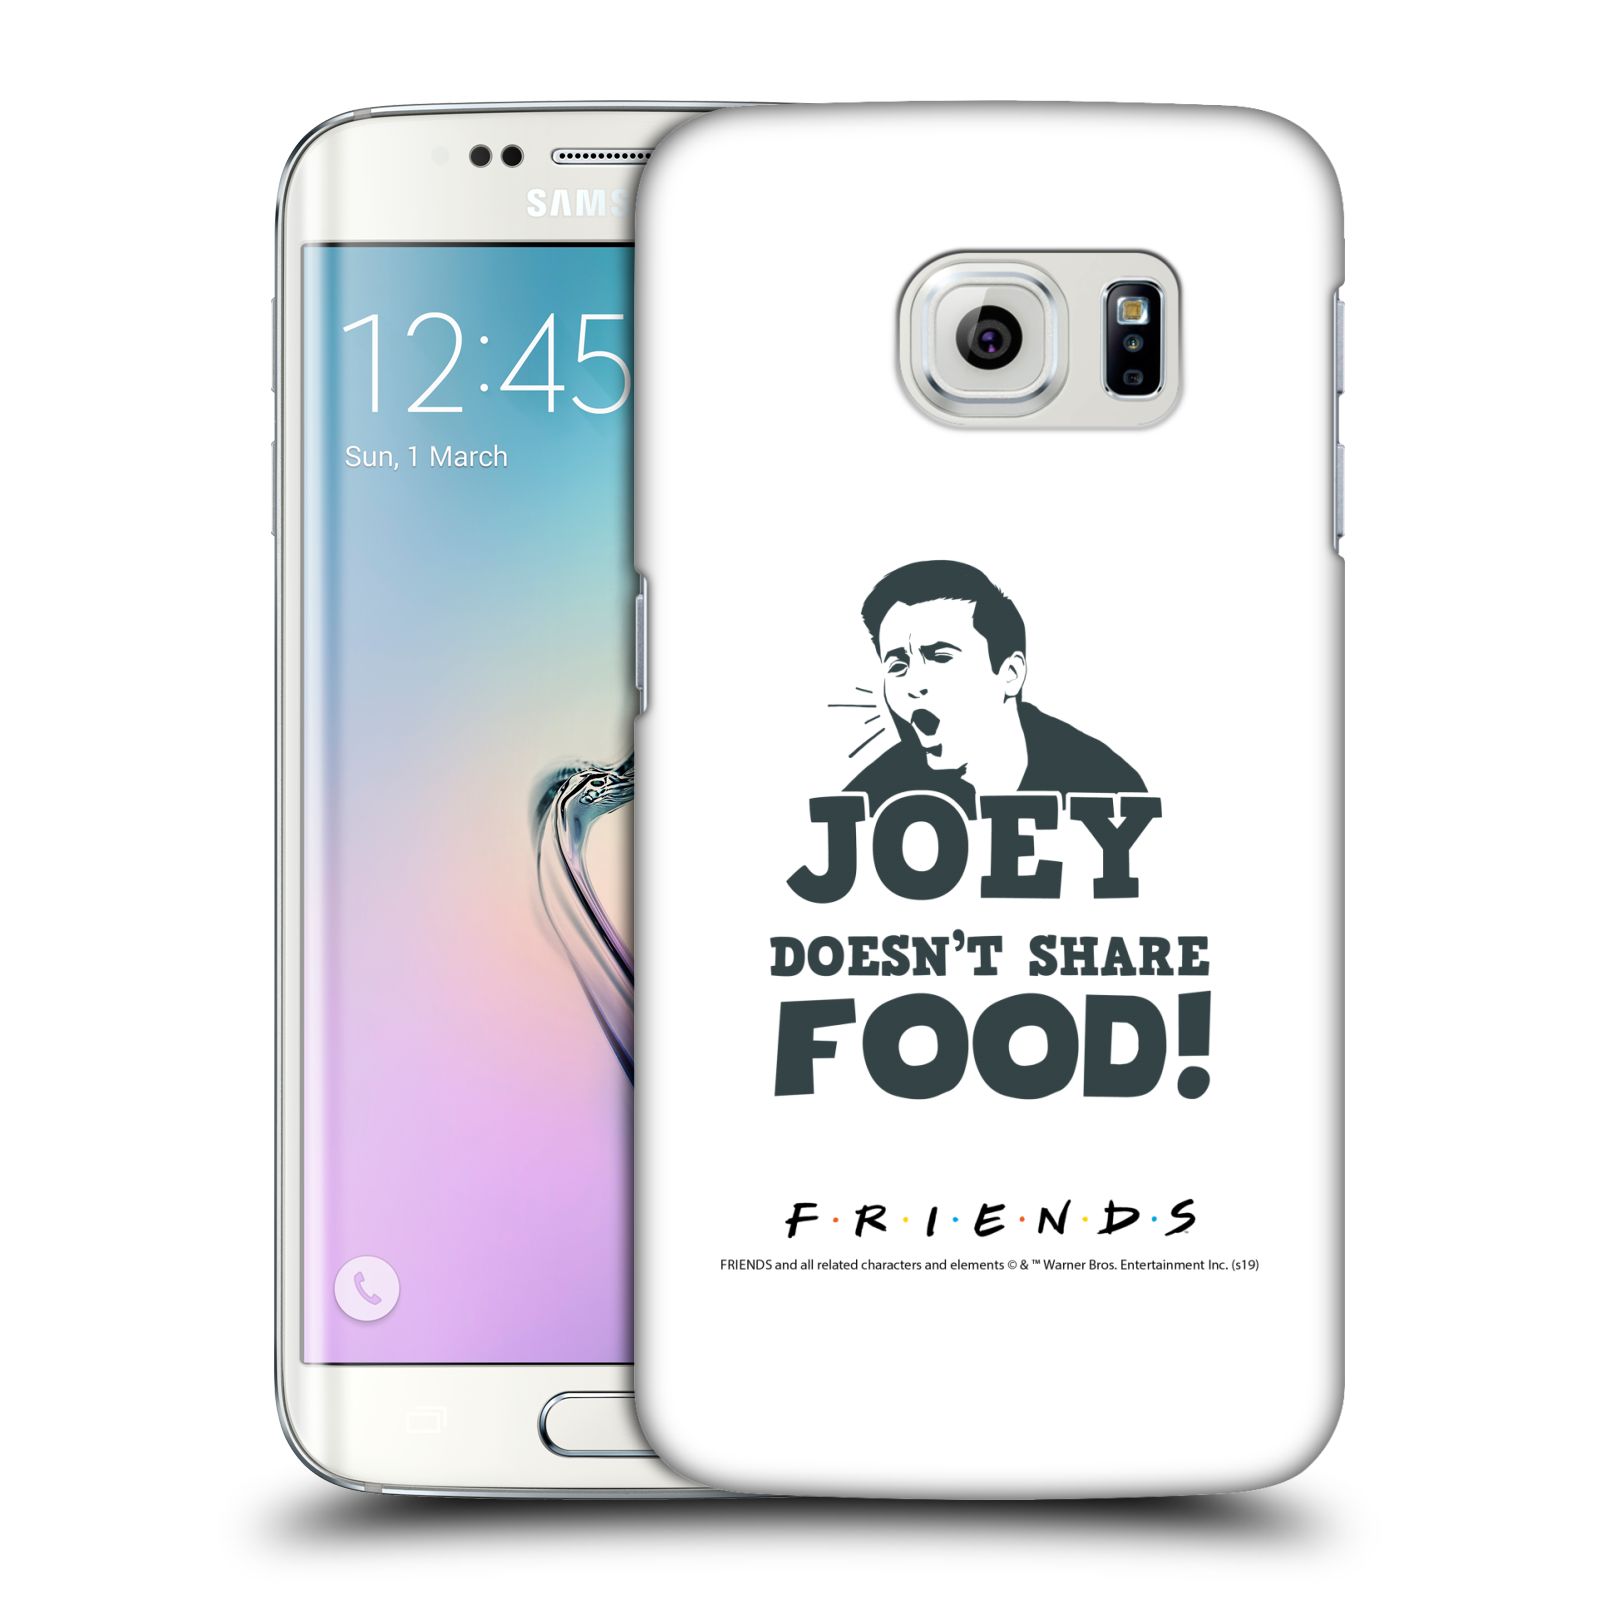 Pouzdro na mobil Samsung Galaxy S6 EDGE - HEAD CASE - Seriál Přátelé - Joey se o jídlo nedělí